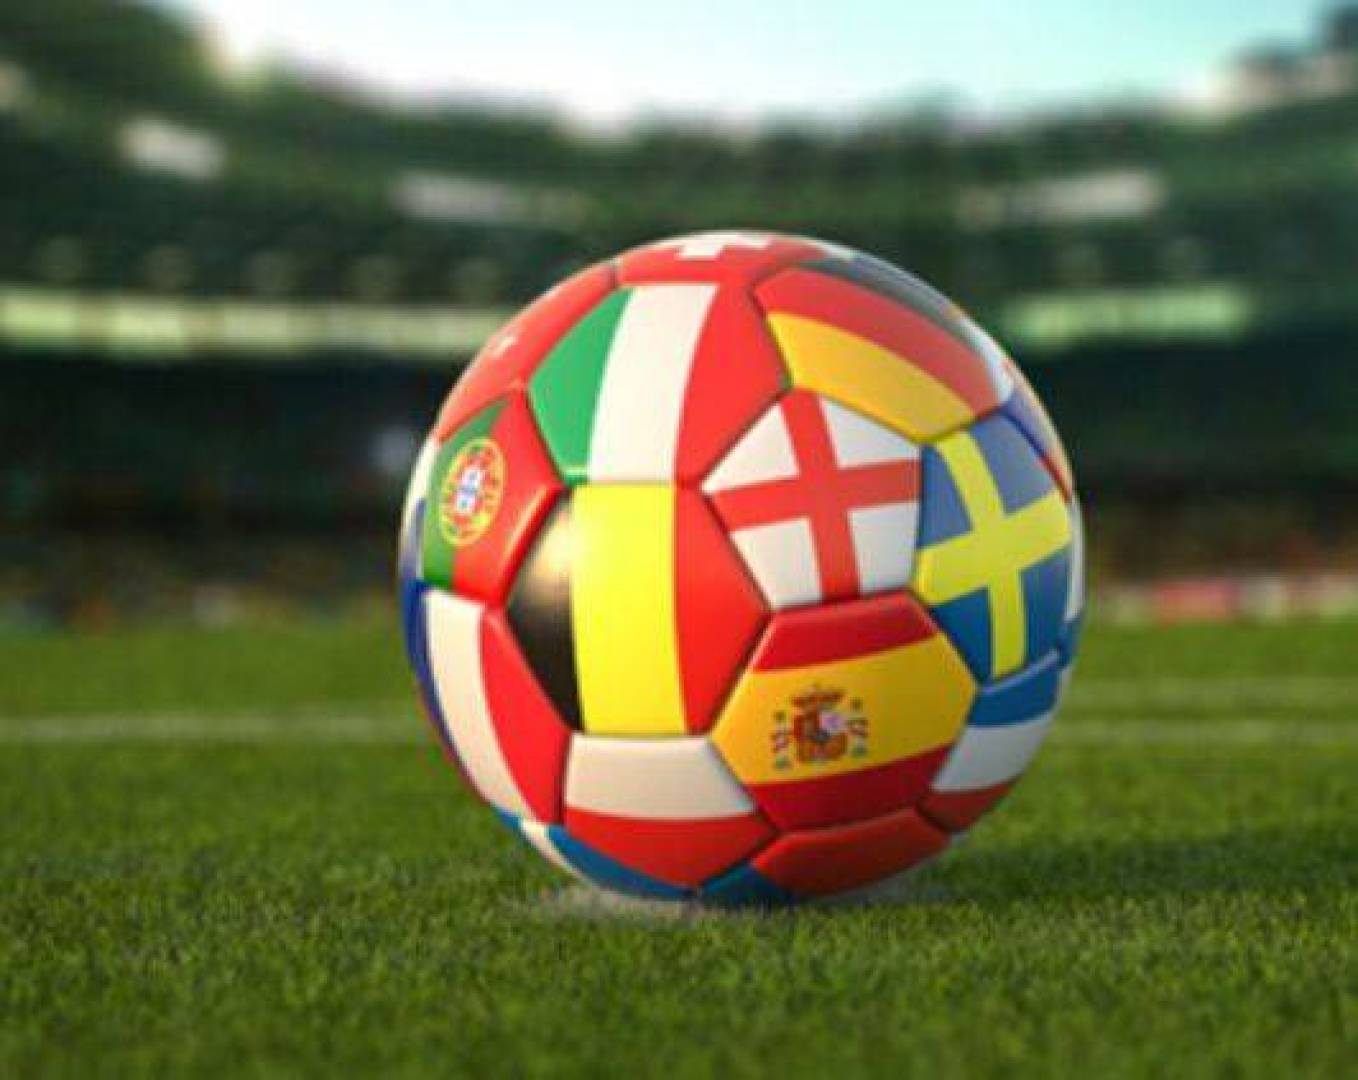 القنوات الناقله لمباريات اليوم الخميس في الملاعب العالمية وموعدها بالتفصيل